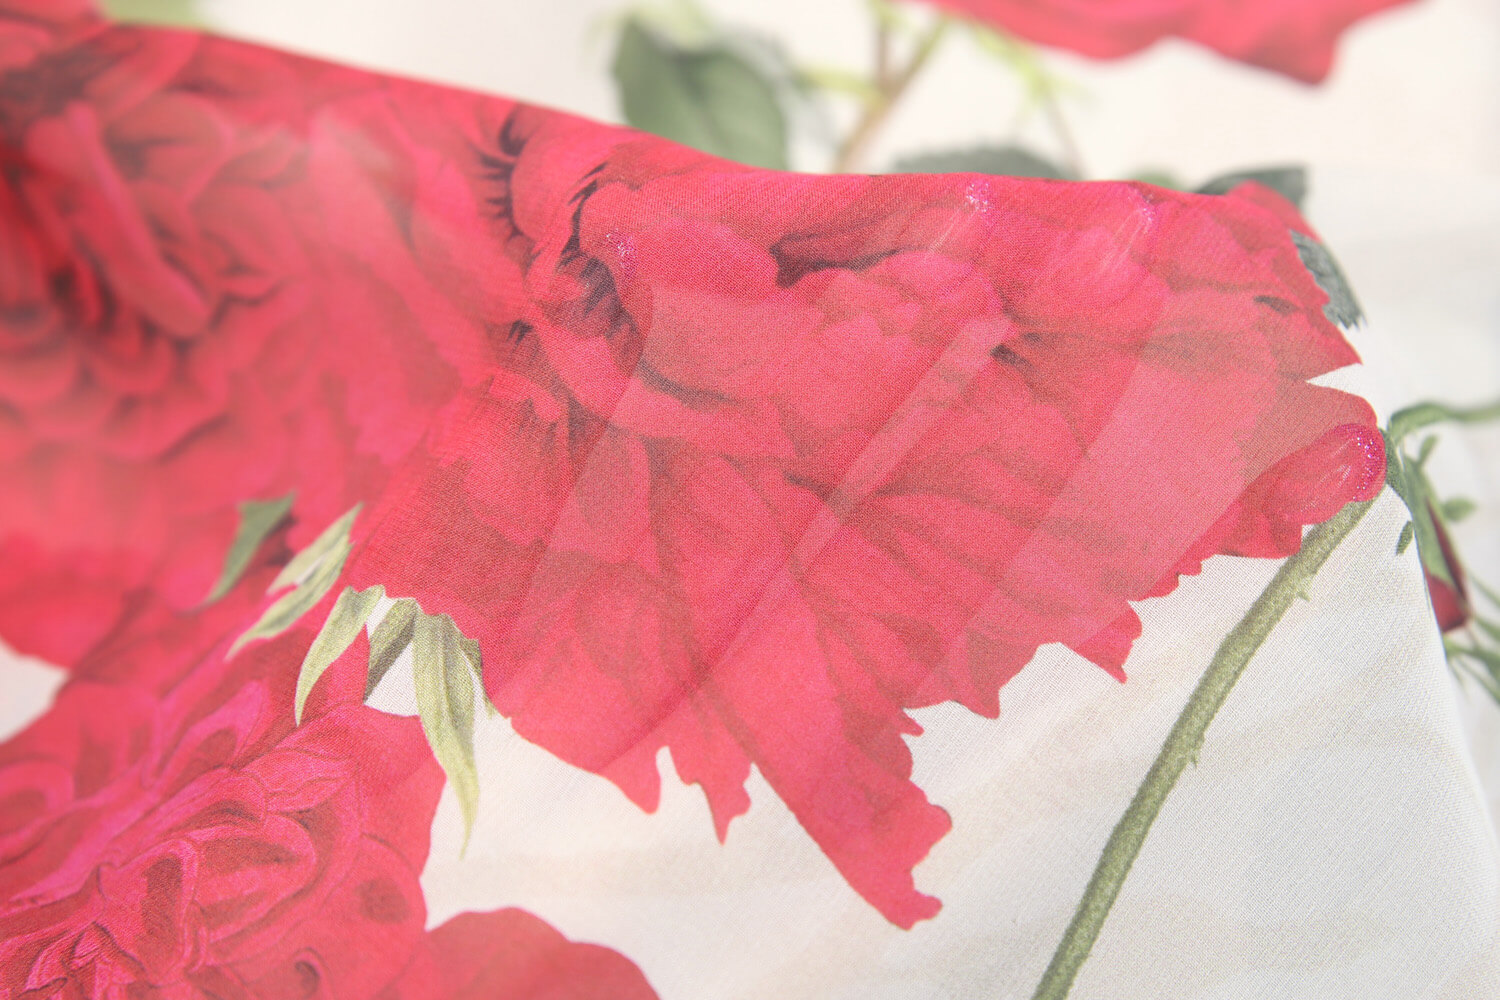 Шелковый жоржет Giambattista Valli, цвет Красный, фото 1